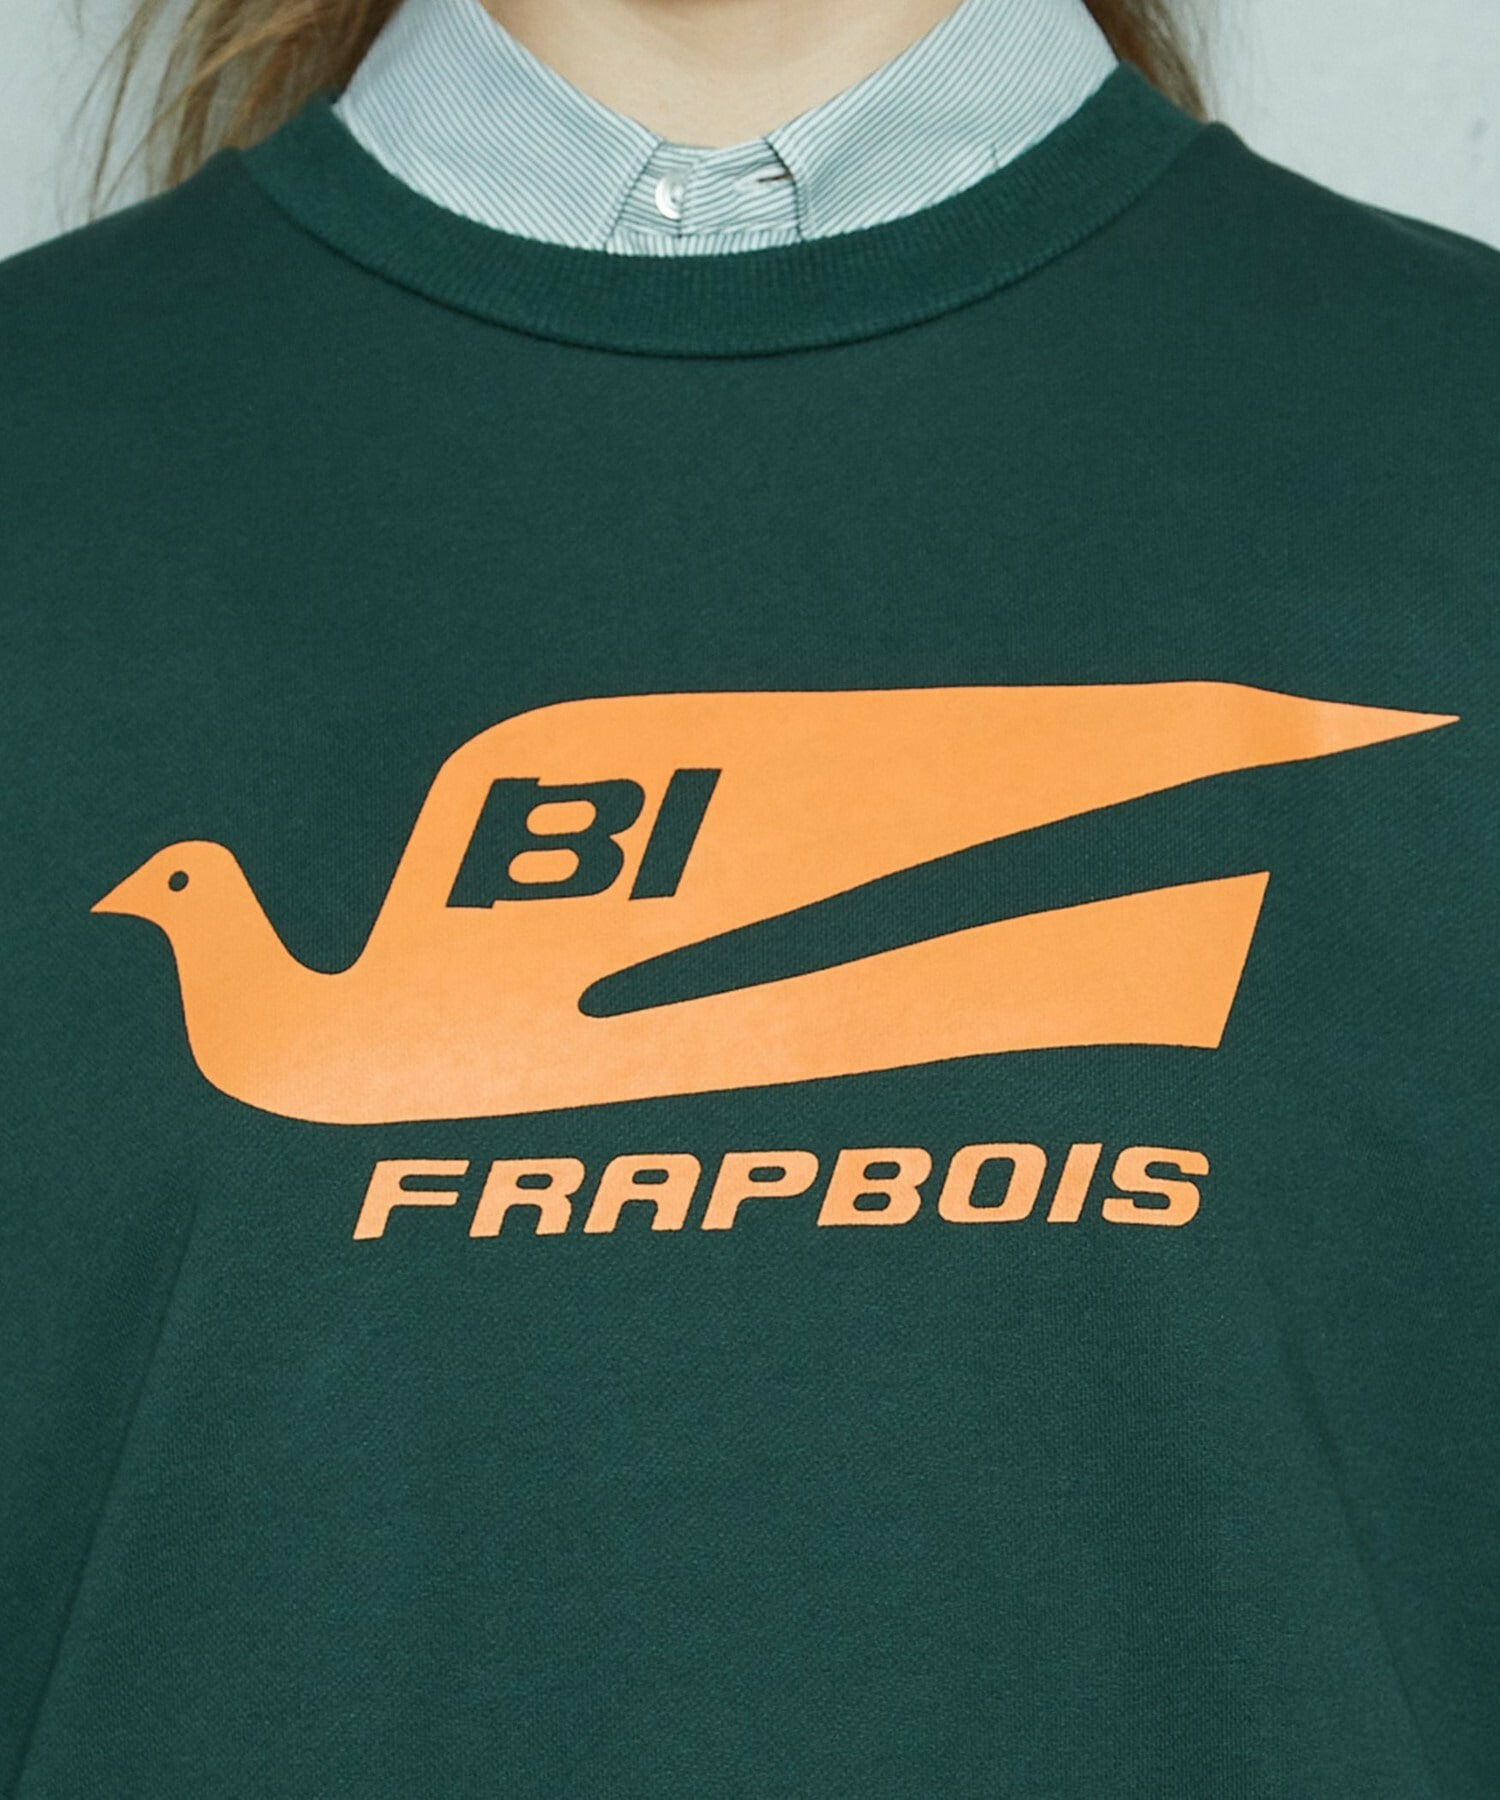 【FRAPBOIS】FRAPBOIS×BRANIFF INTERNATIONAL スウェット 詳細画像 ネイビー 9